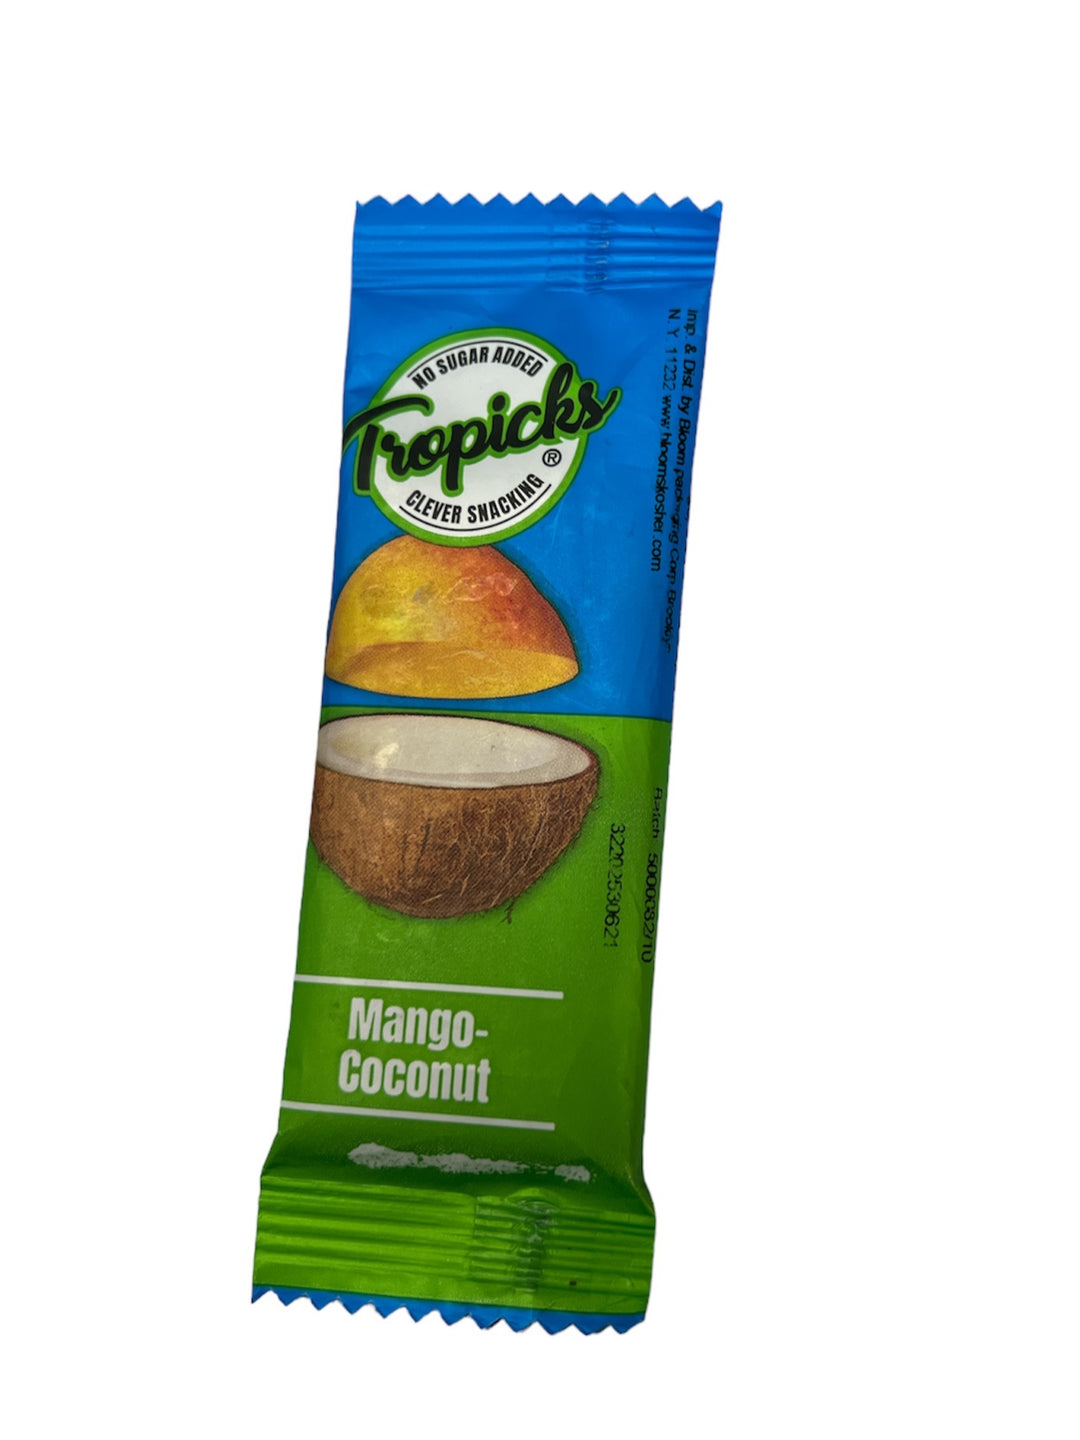 Tropics Mango-Coconut Bars 20g